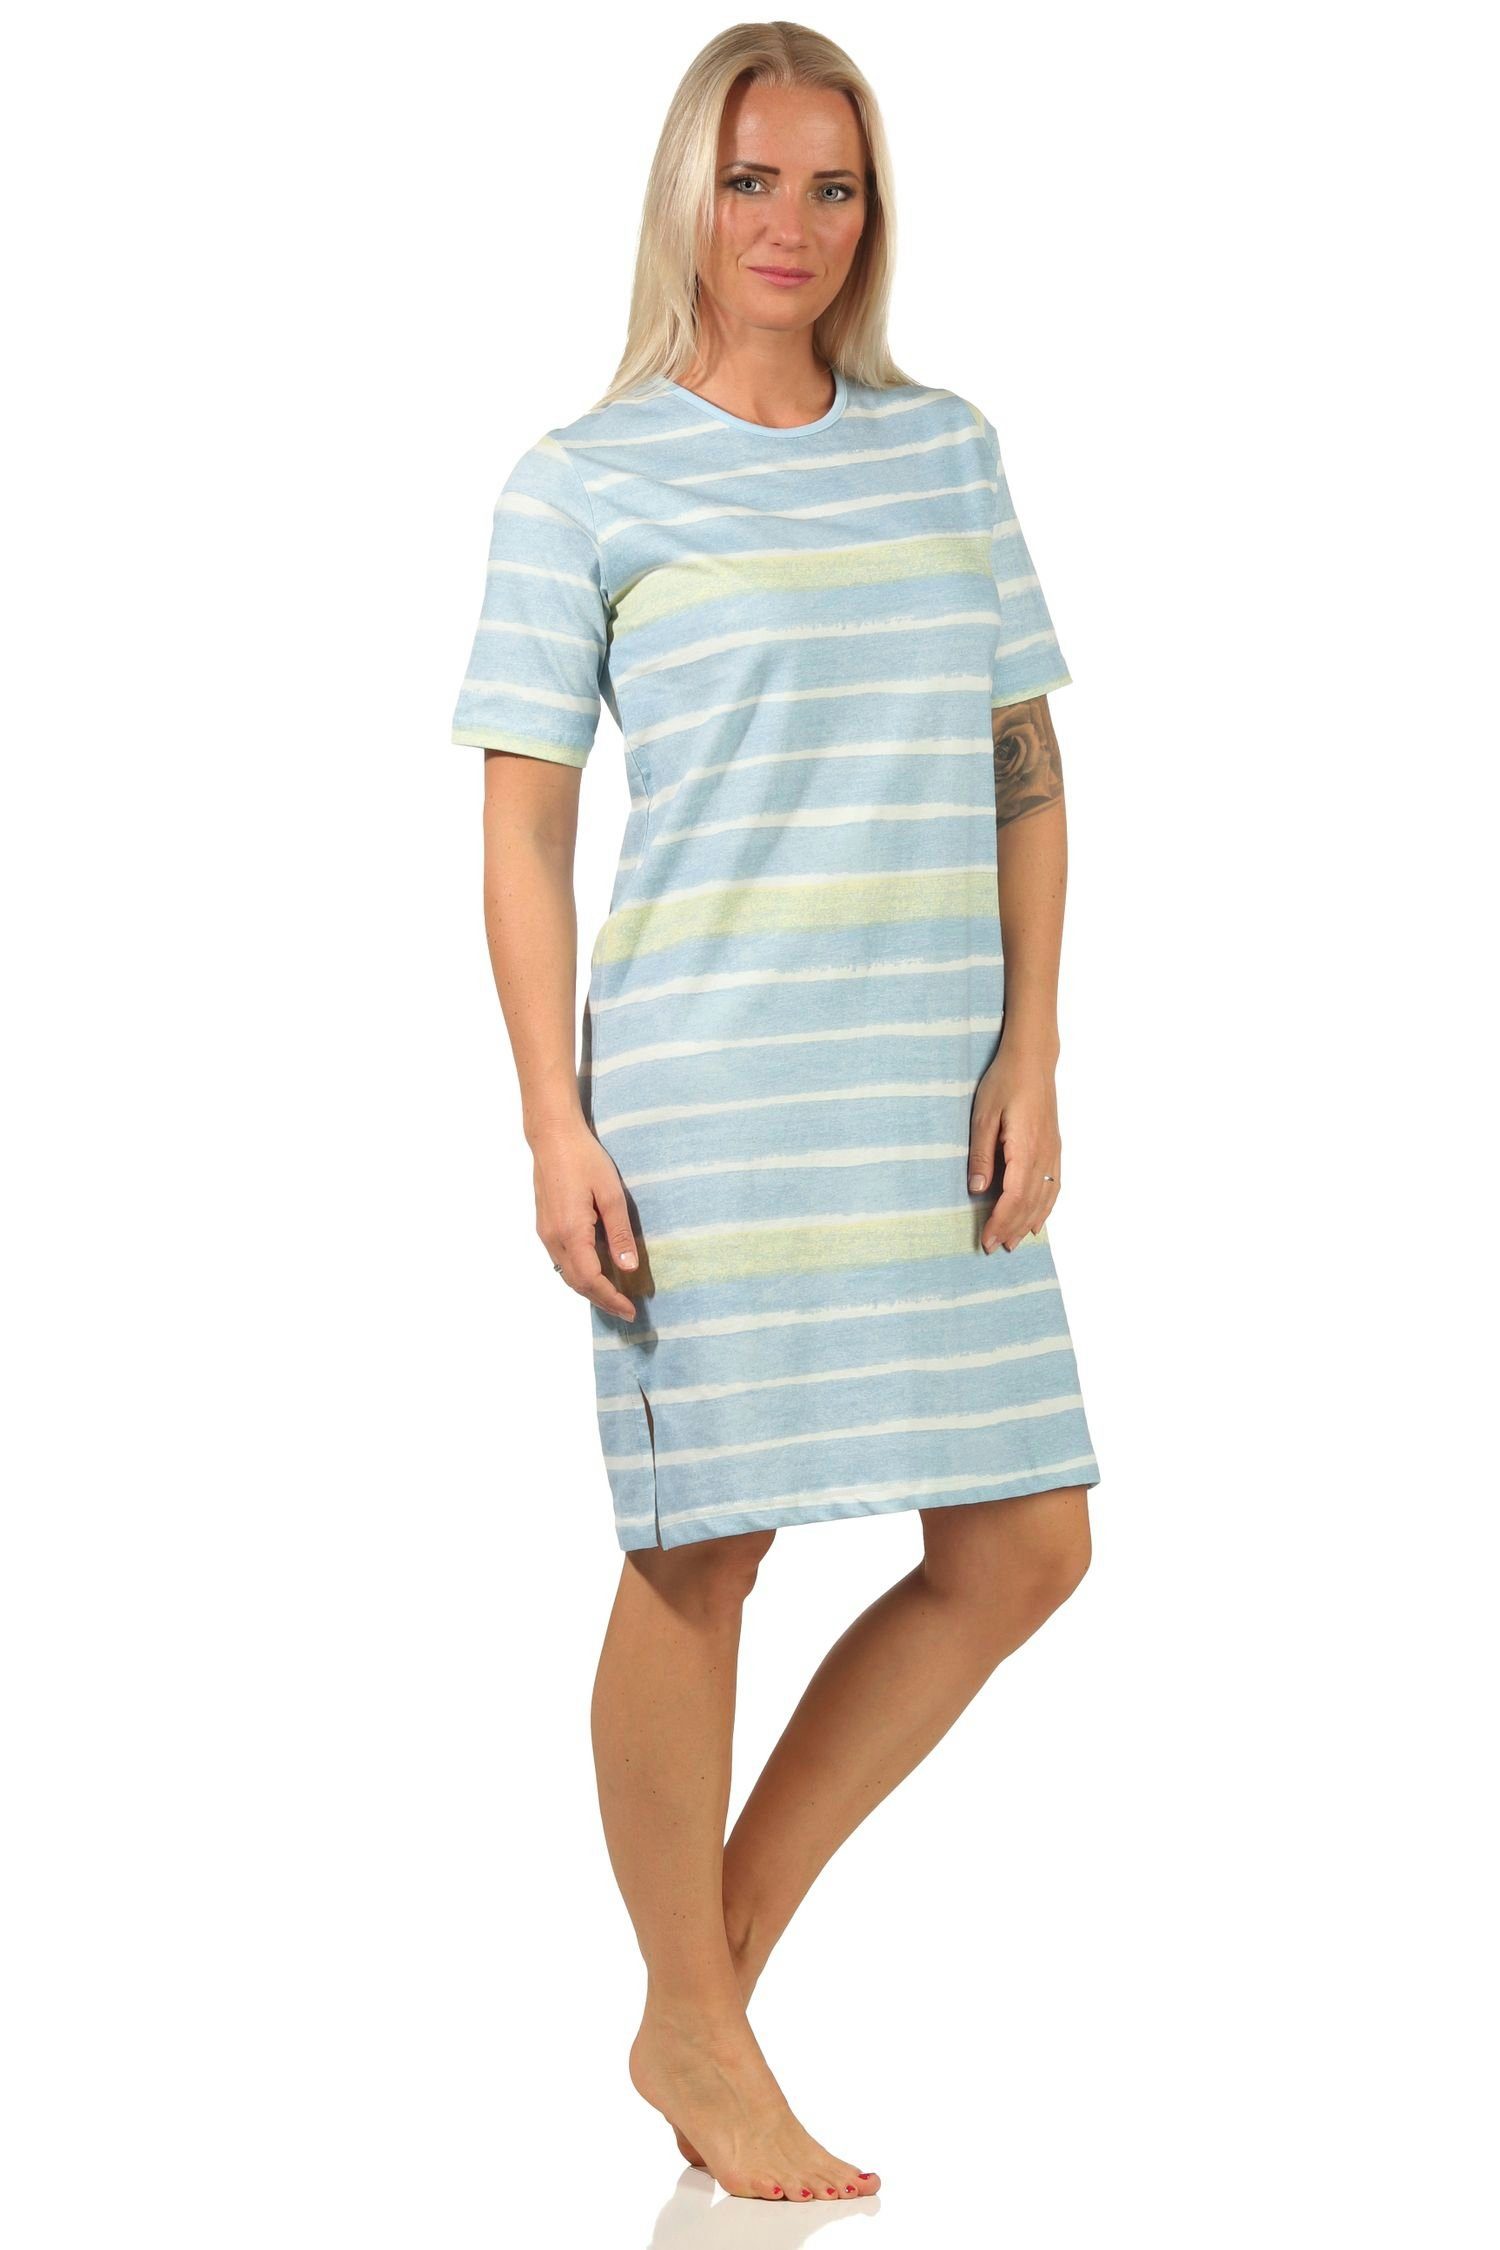 Normann Nachthemd Damen – 112 464 hellblau Look kurzarm farbenfrohen im Nachthemd Streifen